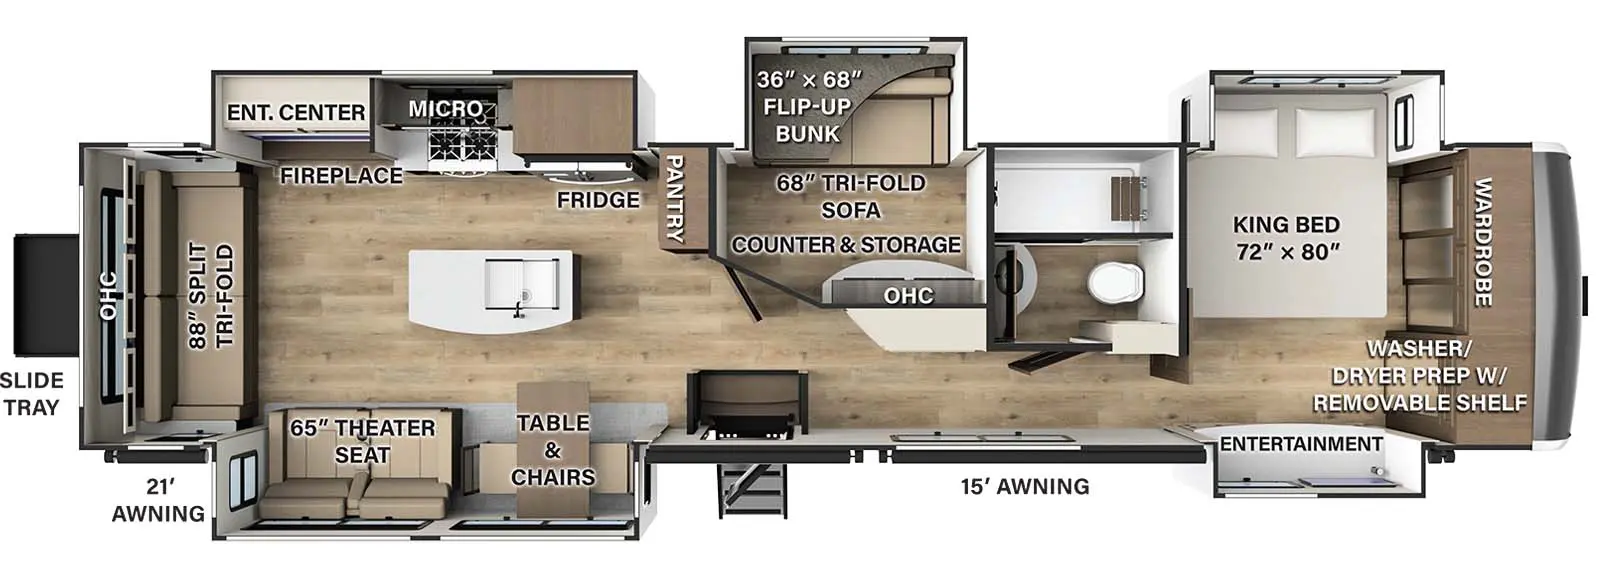 392MB Floorplan Image